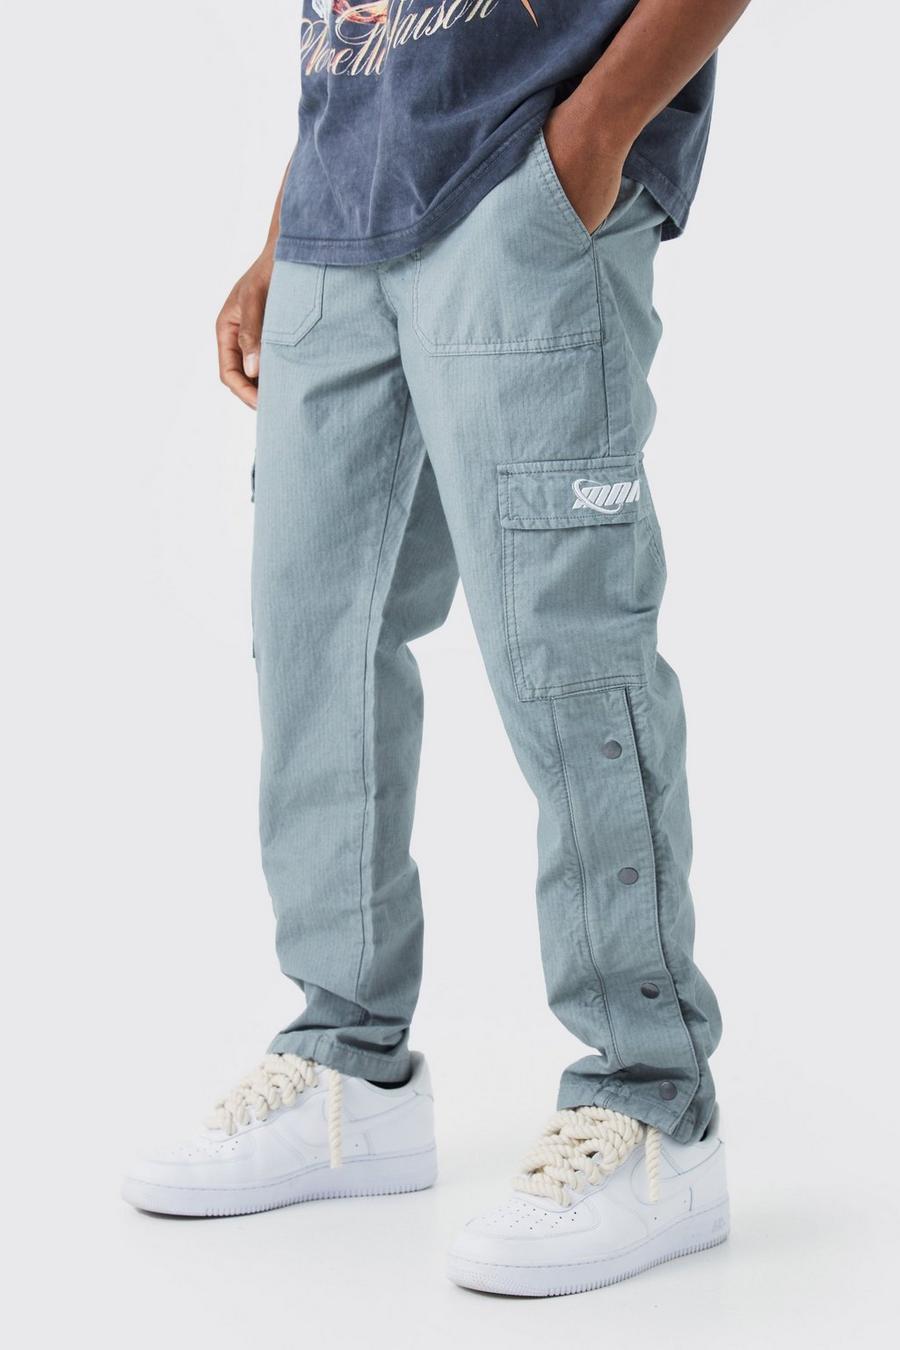 Pantaloni dritti stile Cargo in nylon ripstop con bottoni a pressione sul fondo, Slate